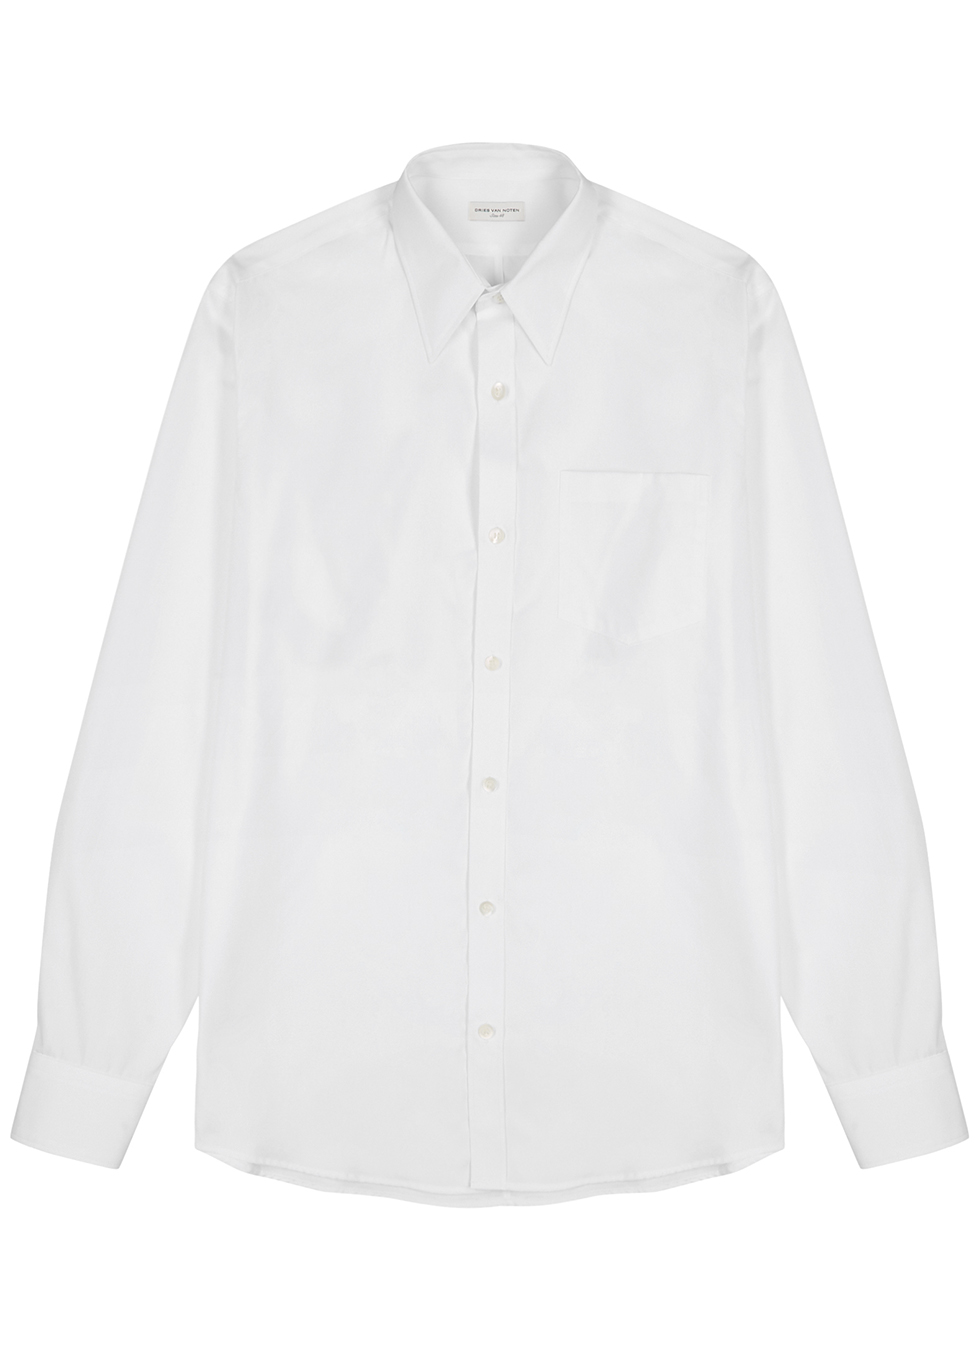 Dries Van Noten Corbino white cotton shirt - Harvey Nichols